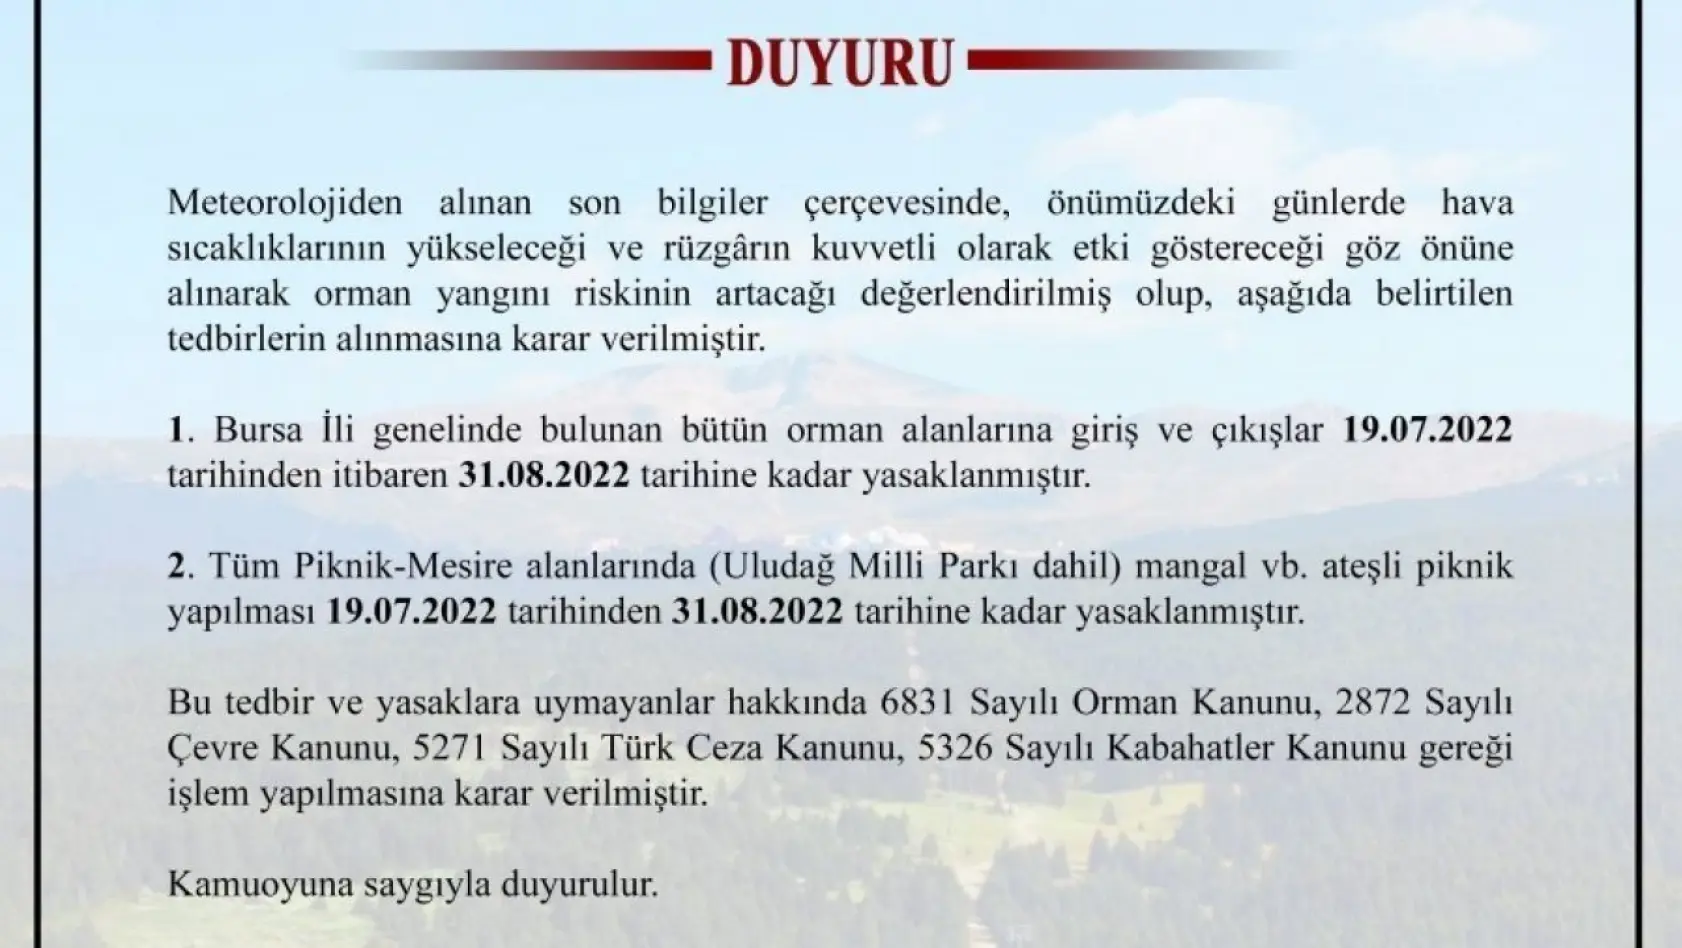 Bursa'da ormanlara giriş çıkışlar ve ateşli piknik yapılması yasaklandı